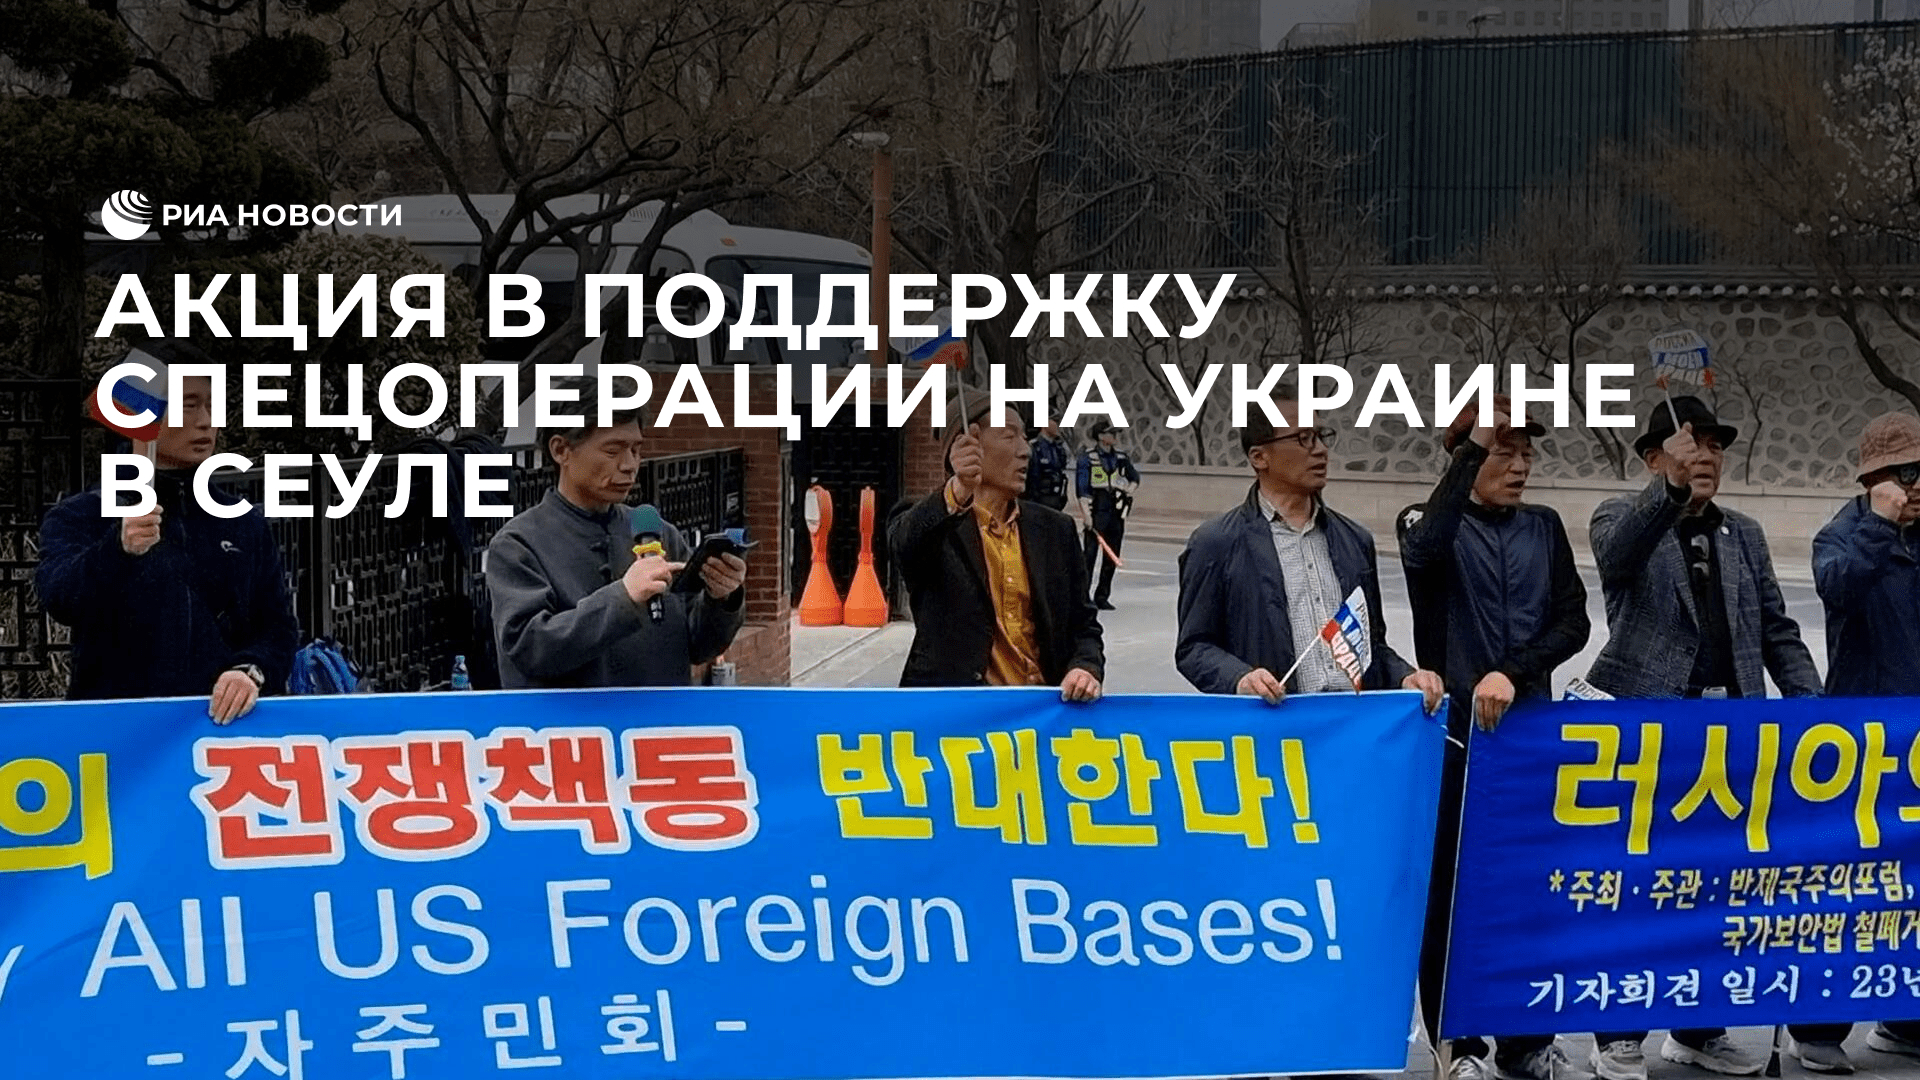 Акция в поддержку спецоперации на Украине в Сеуле